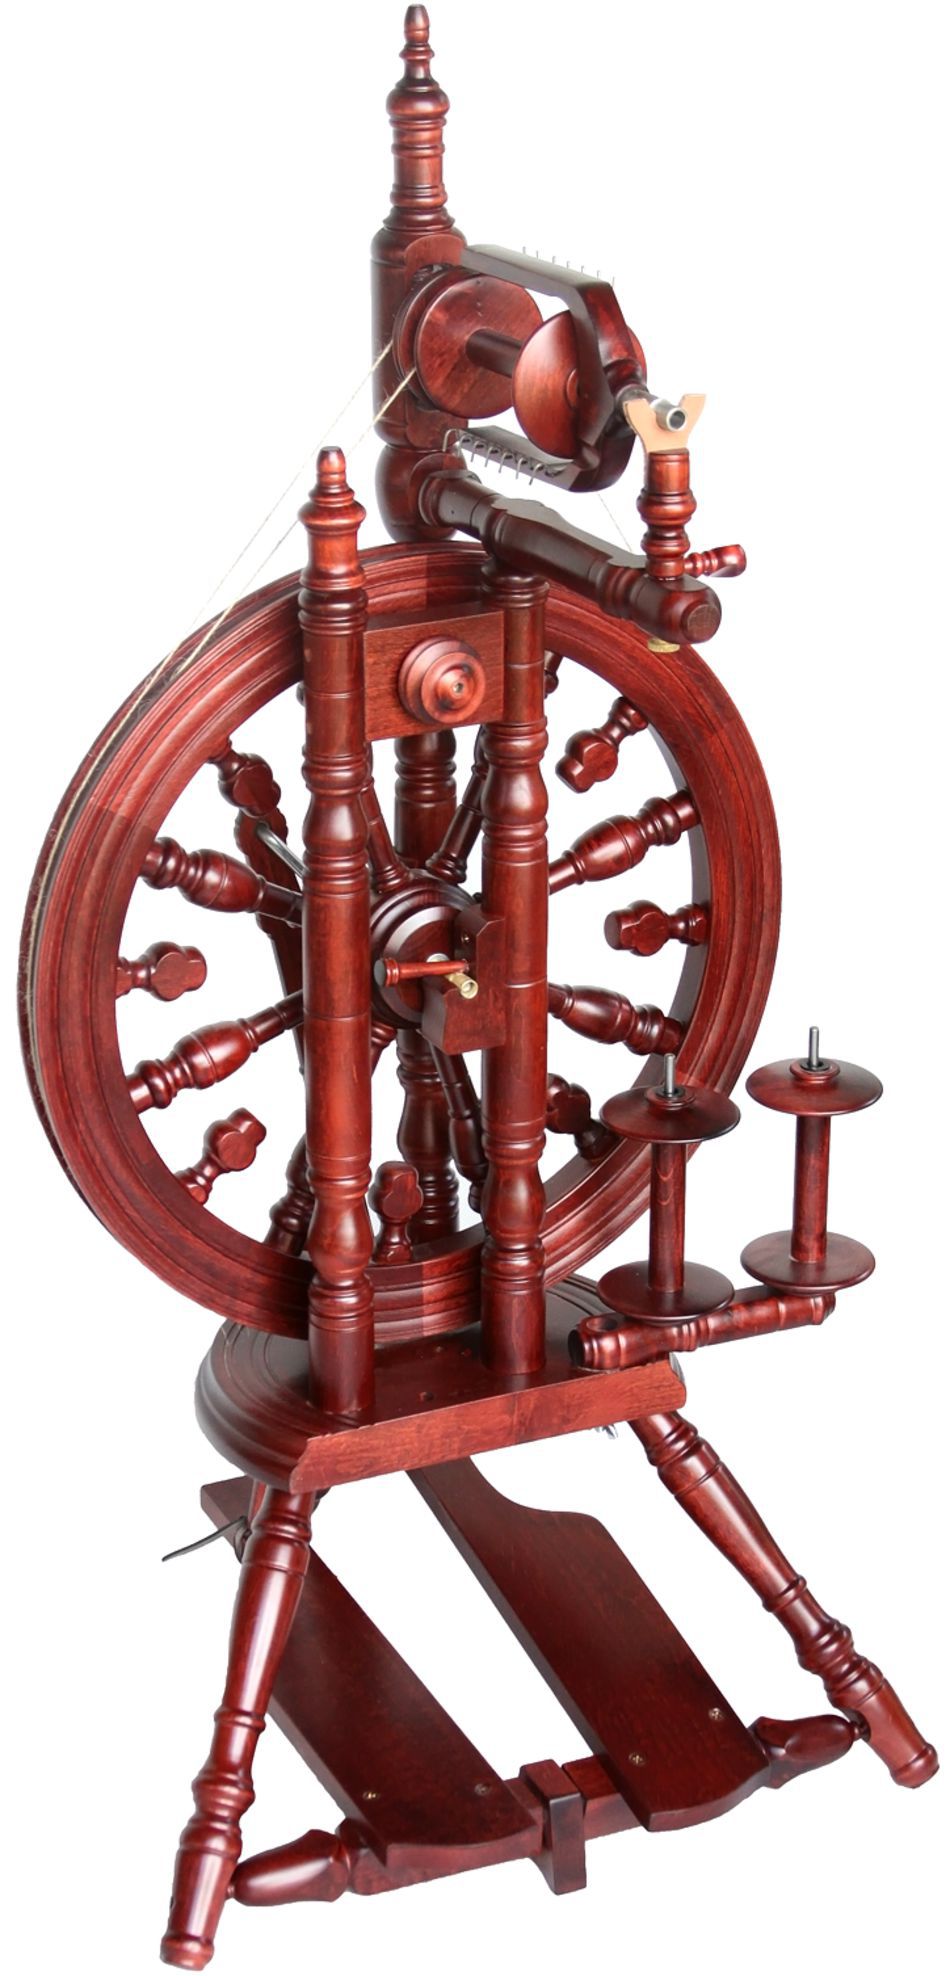 Spinning Equipment Kromski Minstrel Spinning Wheel Mahogany